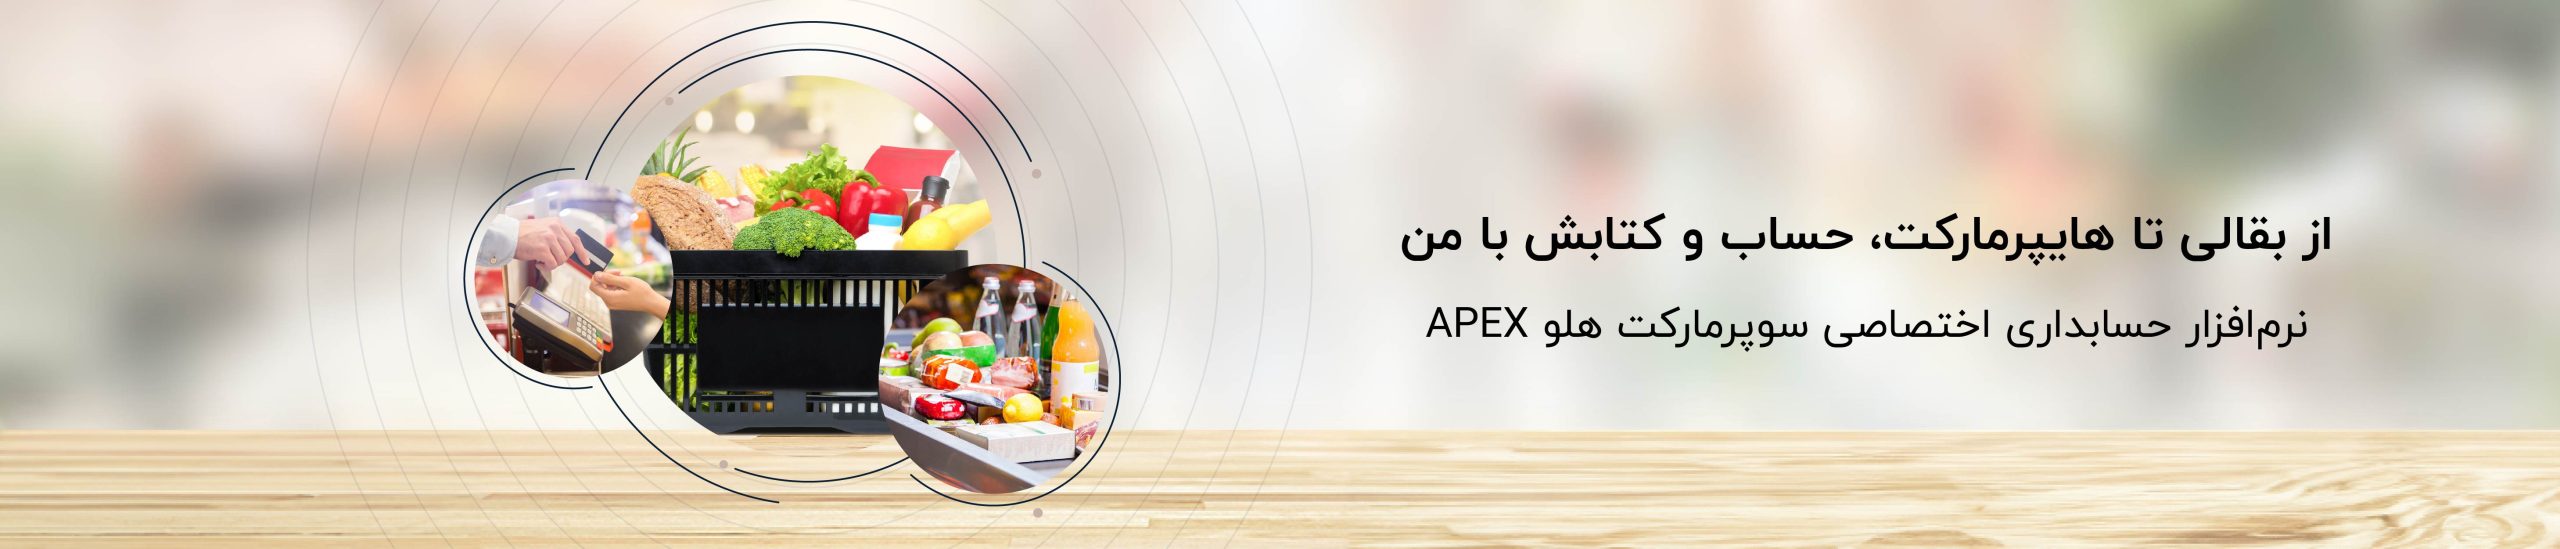 هایپر مارکت 01 1 scaled - نرم‌افزار حسابداری سوپرمارکت هلو APEX